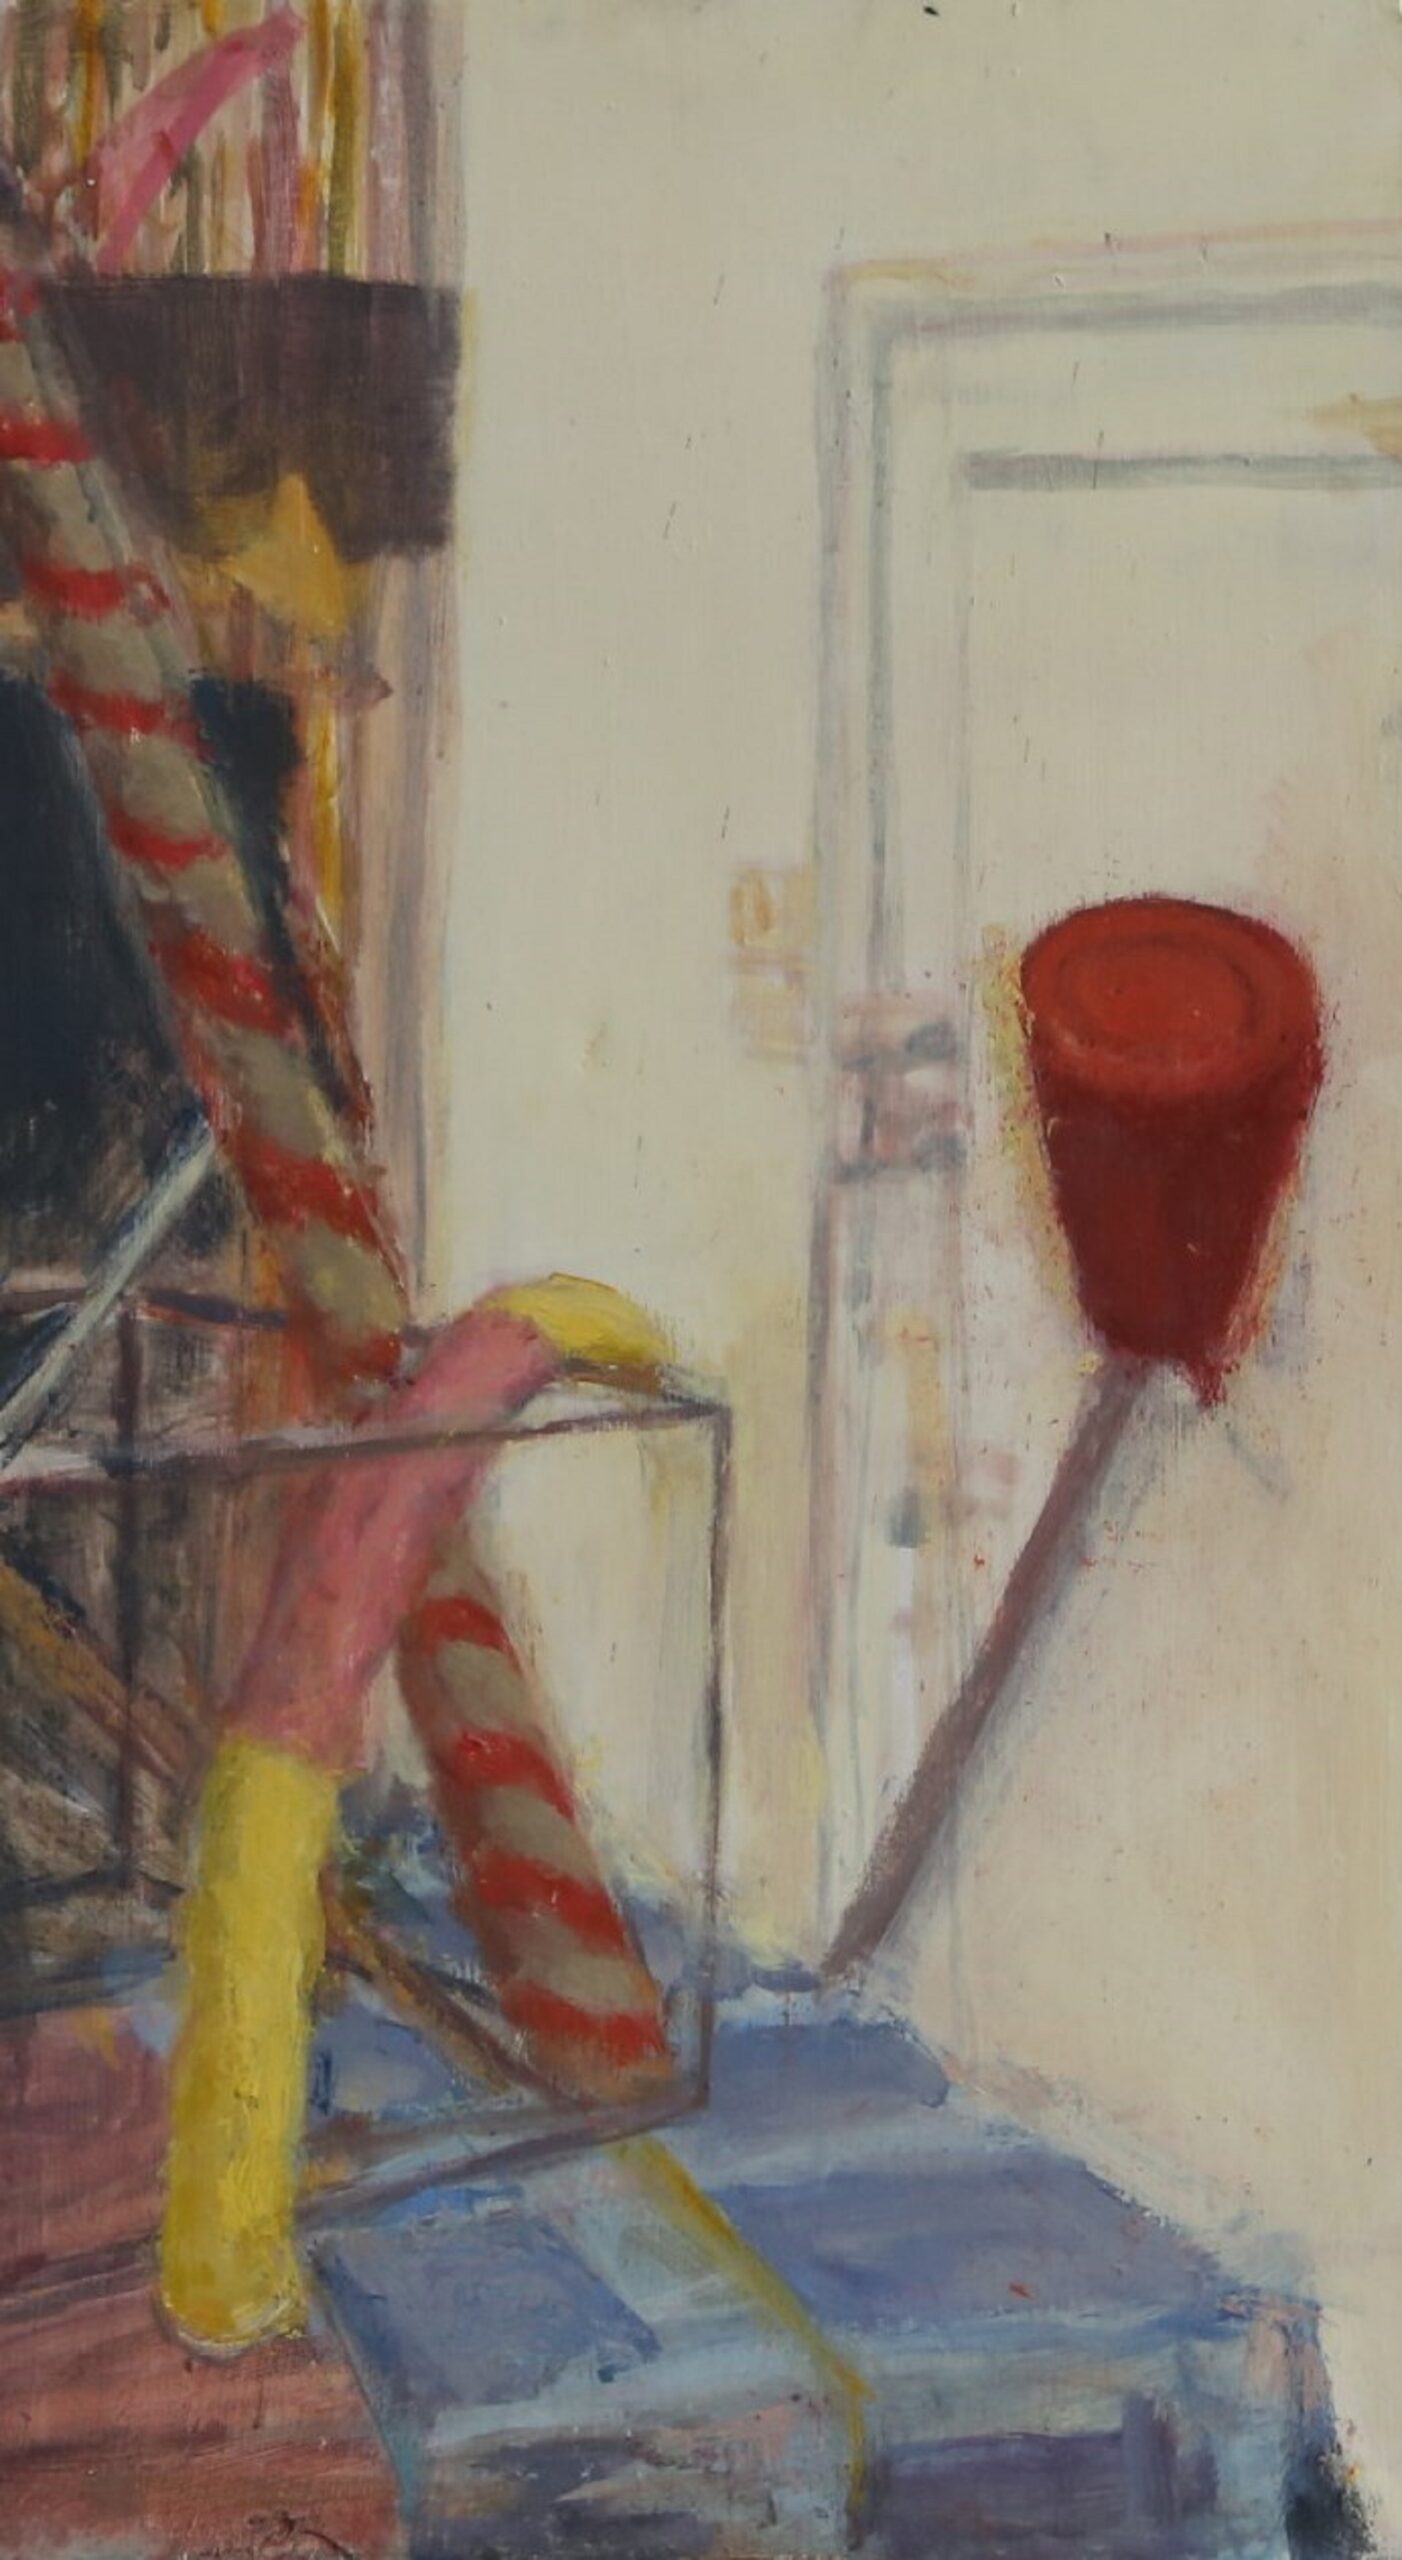 Obraz przedstawia fragment martwej natury wraz z dominującym, czerwonym akcentem w postaci czajnika. Na dalszym planie przedstawione zostały białe drzwi do pracowni.